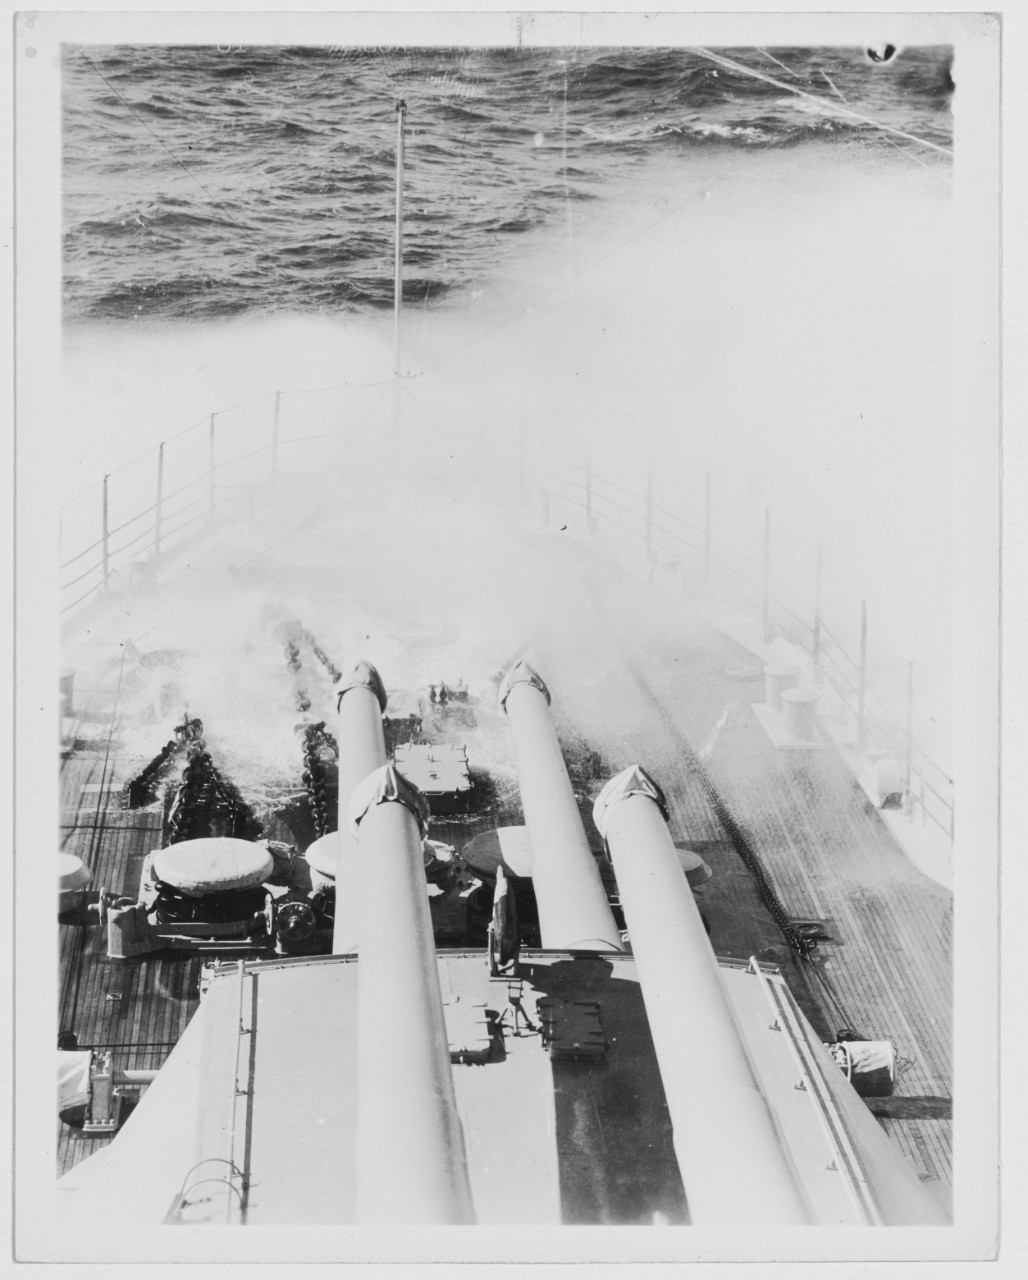 USS NEW YORK (BB-34)